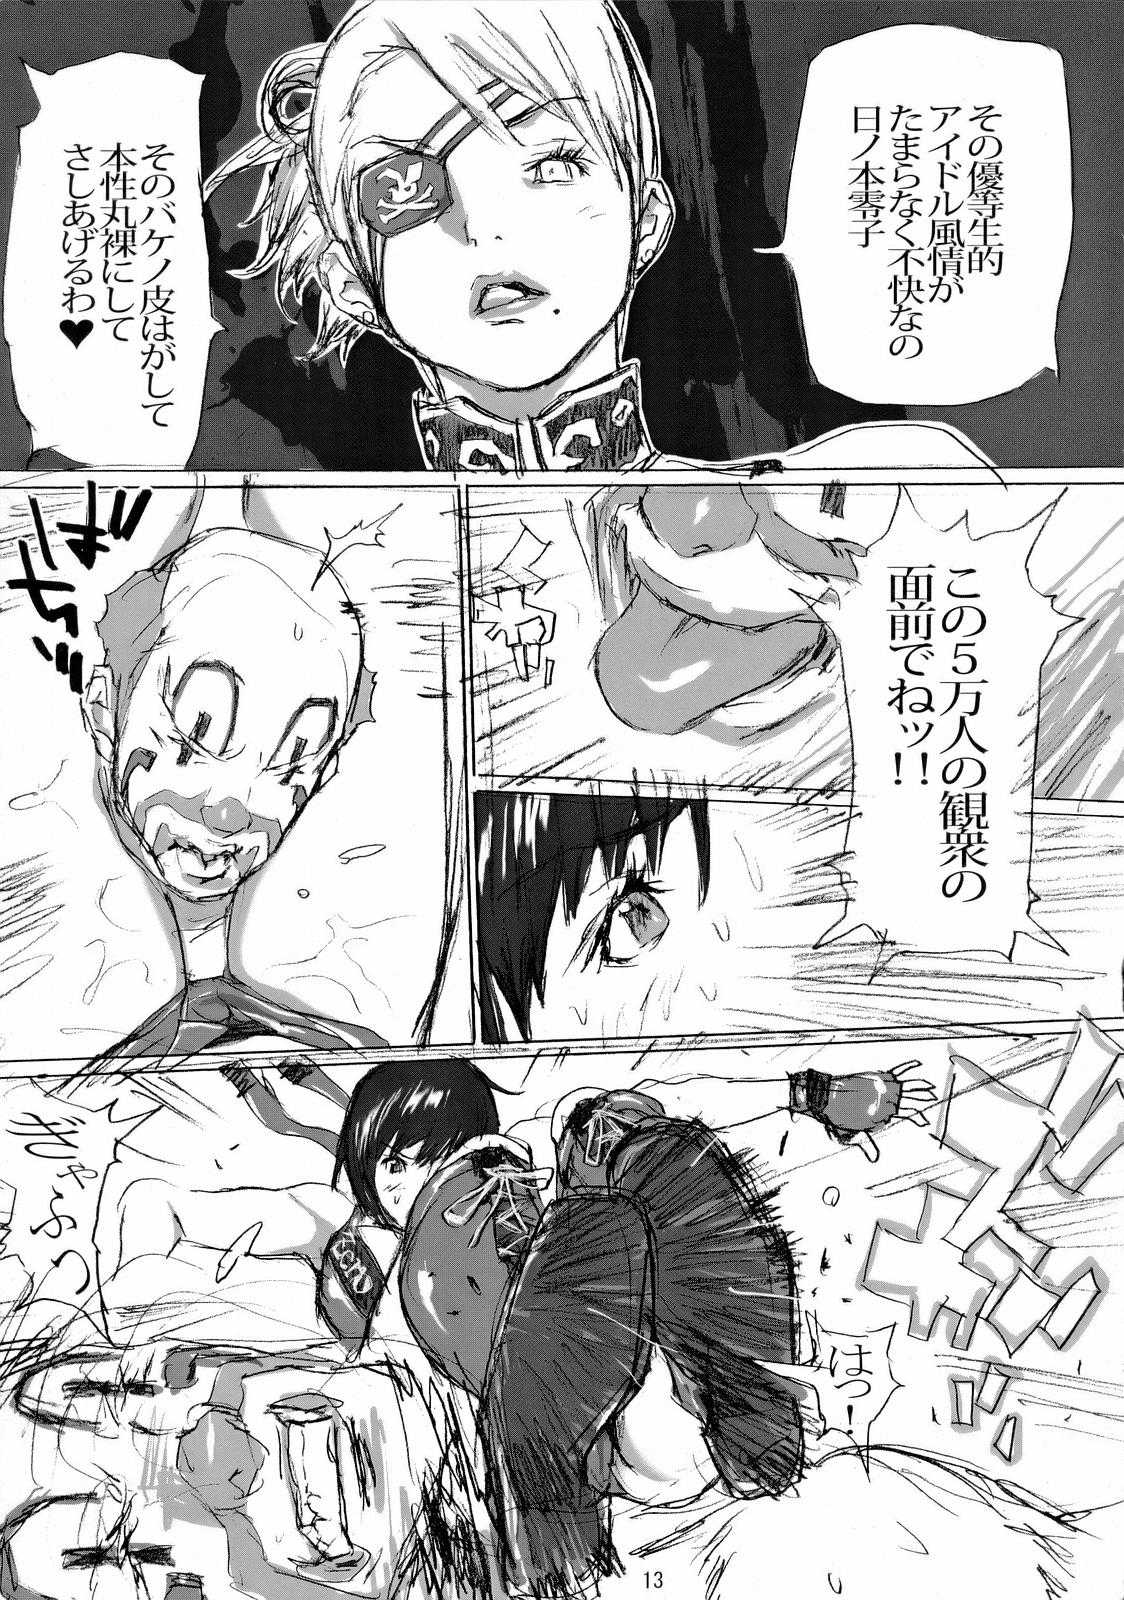 [kaitaiya (Asou Gato)] R.R. Zero (Rumble Roses) [解体屋 ] R.R.ZERO (ランブルローズ)